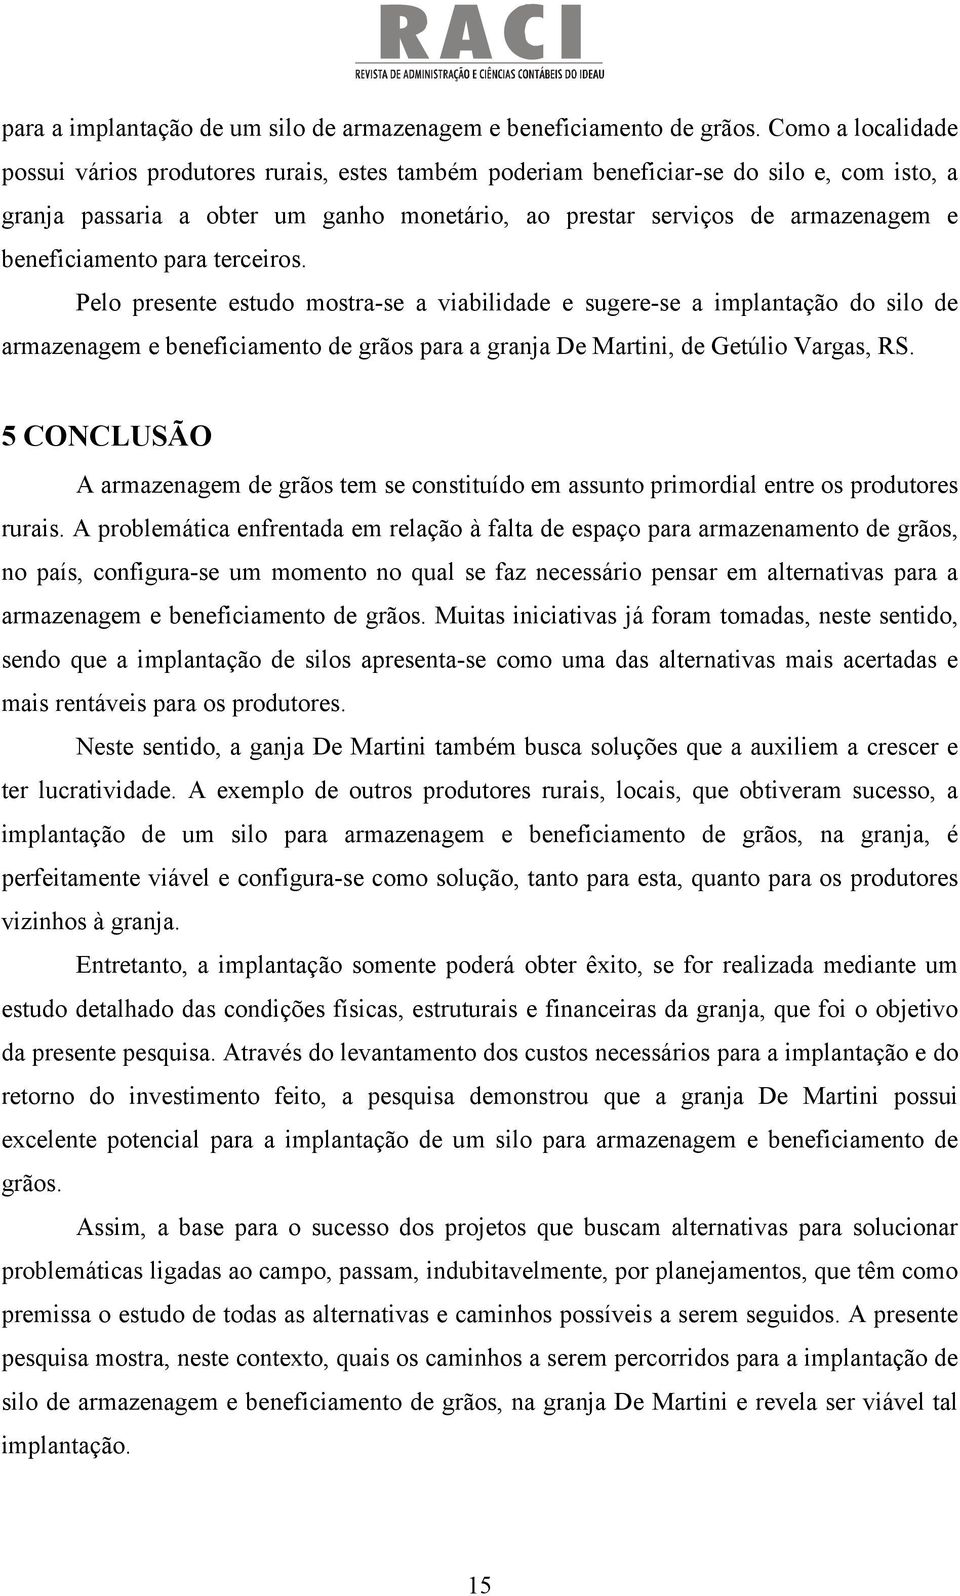 beneficiamento para terceiros. Pelo presente estudo mostra-se a viabilidade e sugere-se a implantação do silo de armazenagem e beneficiamento de grãos para a granja De Martini, de Getúlio Vargas, RS.